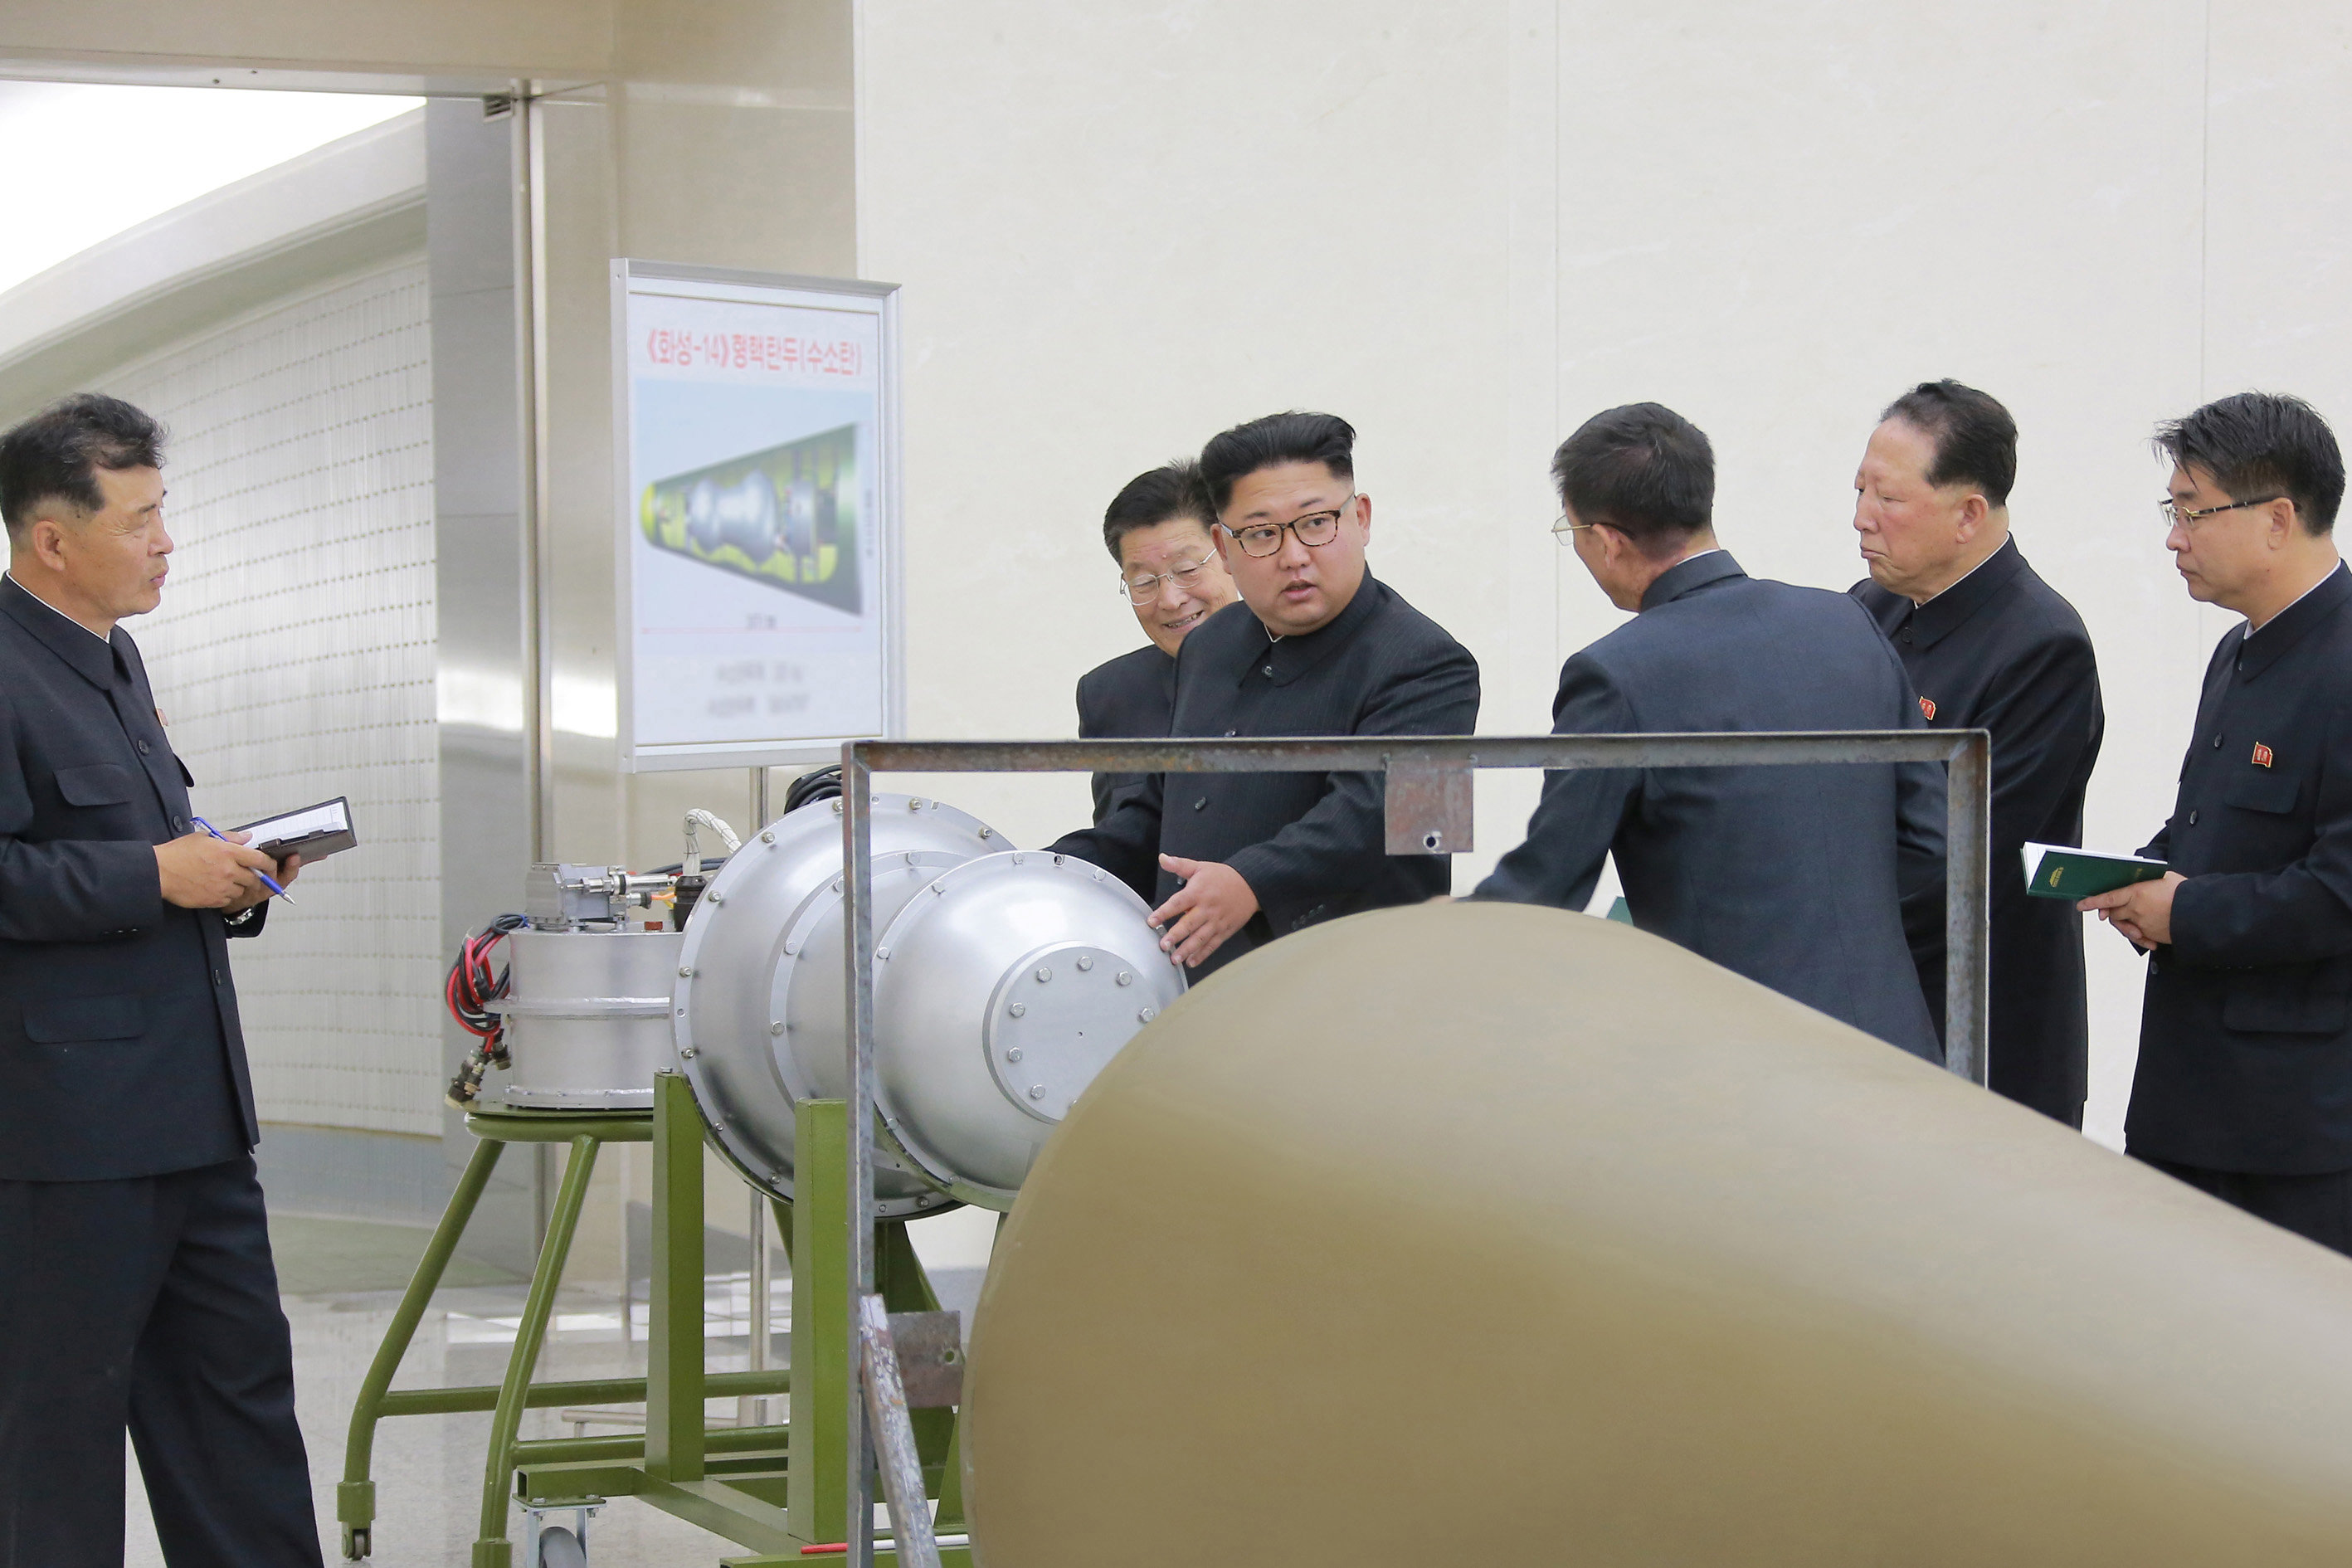 زعيم كوريا الشمالية يشرف على التدريبات